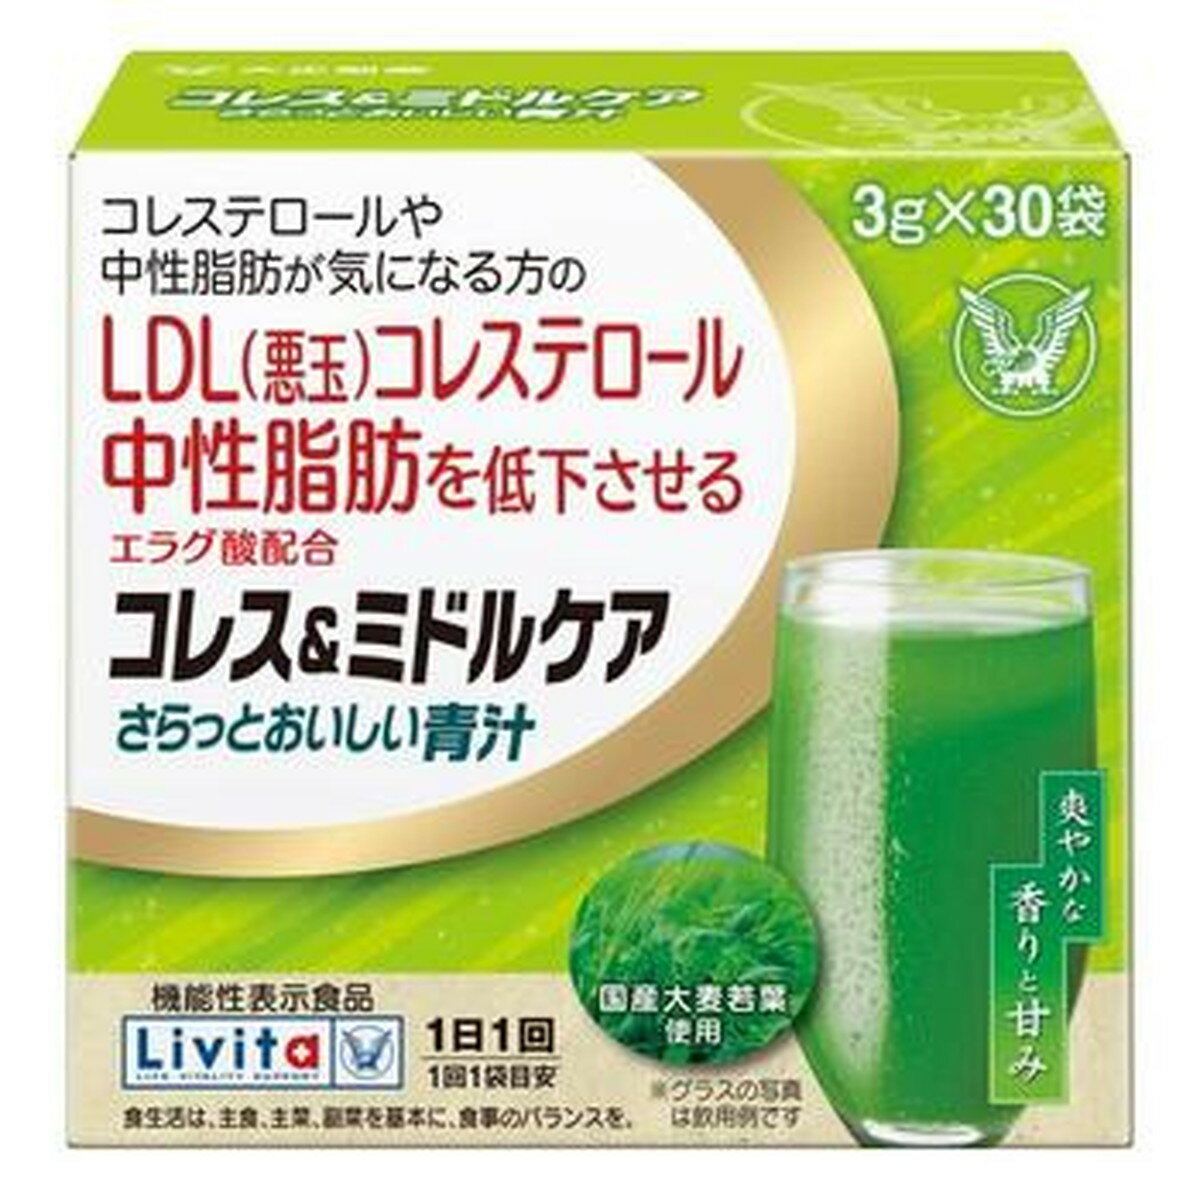 商品名：大正製薬 Livita コレス&ミドルケア さらっとおいしい青汁 3g×30袋 機能性表示食品内容量：3g×30袋JANコード：4987306061941発売元、製造元、輸入元又は販売元：大正製薬原産国：日本区分：機能性表示食品商品番号：103-4987306061941商品説明●本品には、エラグ酸が含まれます。エラグ酸には、LDL(悪玉)コレステロールや中性脂肪を低下させる機能があることが報告されています。●さらっとしたおいしい青汁です●1日1回1袋。広告文責：アットライフ株式会社TEL 050-3196-1510 ※商品パッケージは変更の場合あり。メーカー欠品または完売の際、キャンセルをお願いすることがあります。ご了承ください。